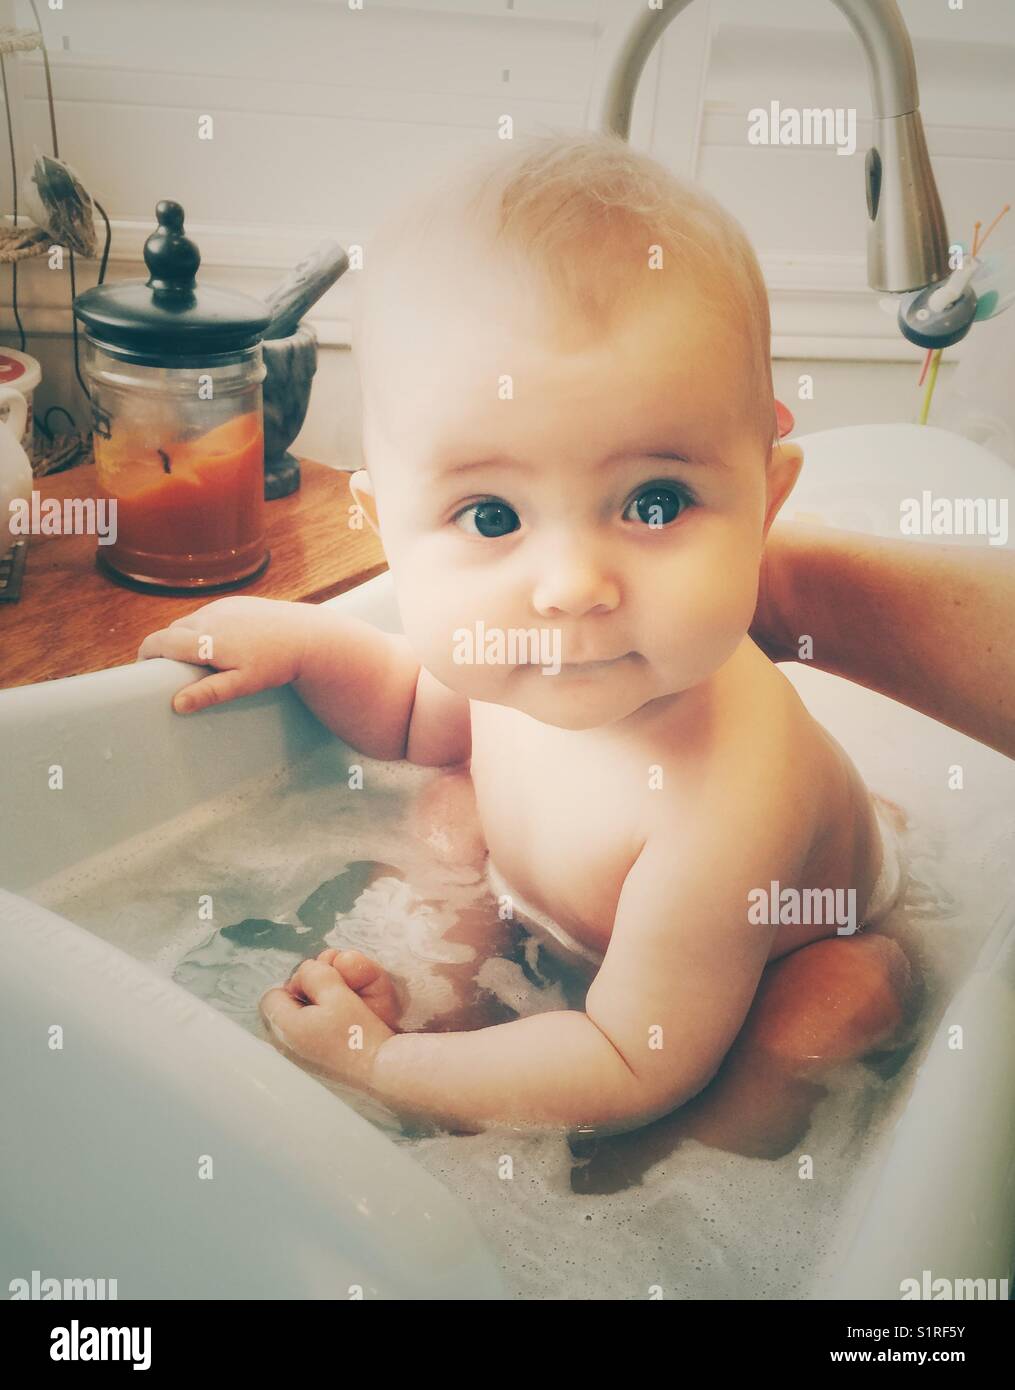 Jeune bébé ayant un bain à bulles dans un bébé à remous inséré dans un évier de cuisine Banque D'Images